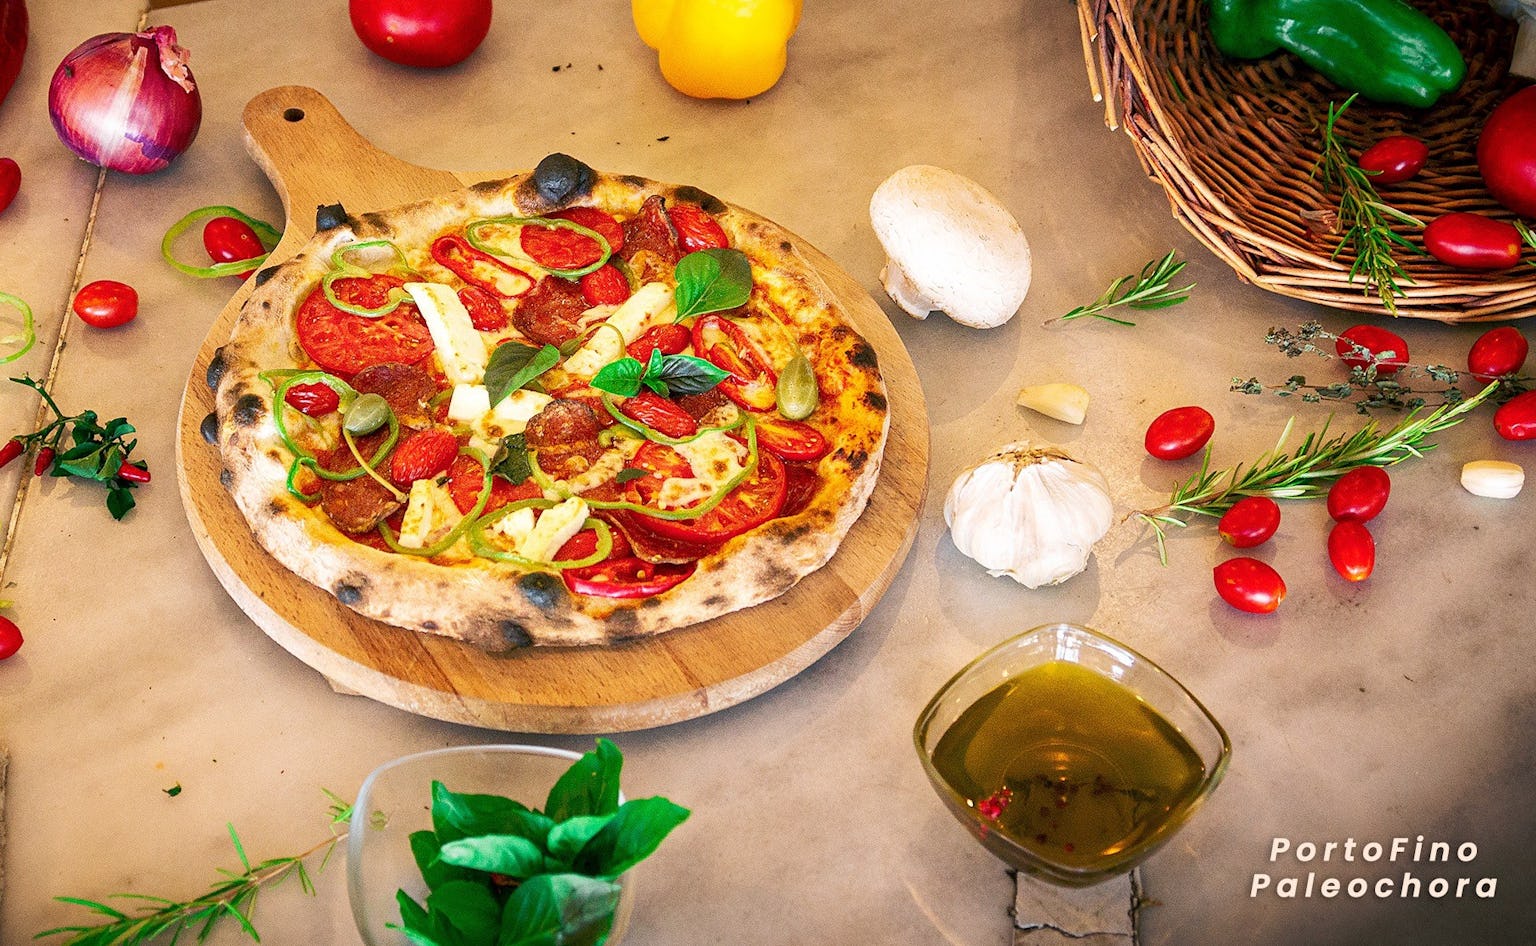 Πορτοφίνο: Αυθεντική ιταλική πίτσα και al dente μακαρονάδες!